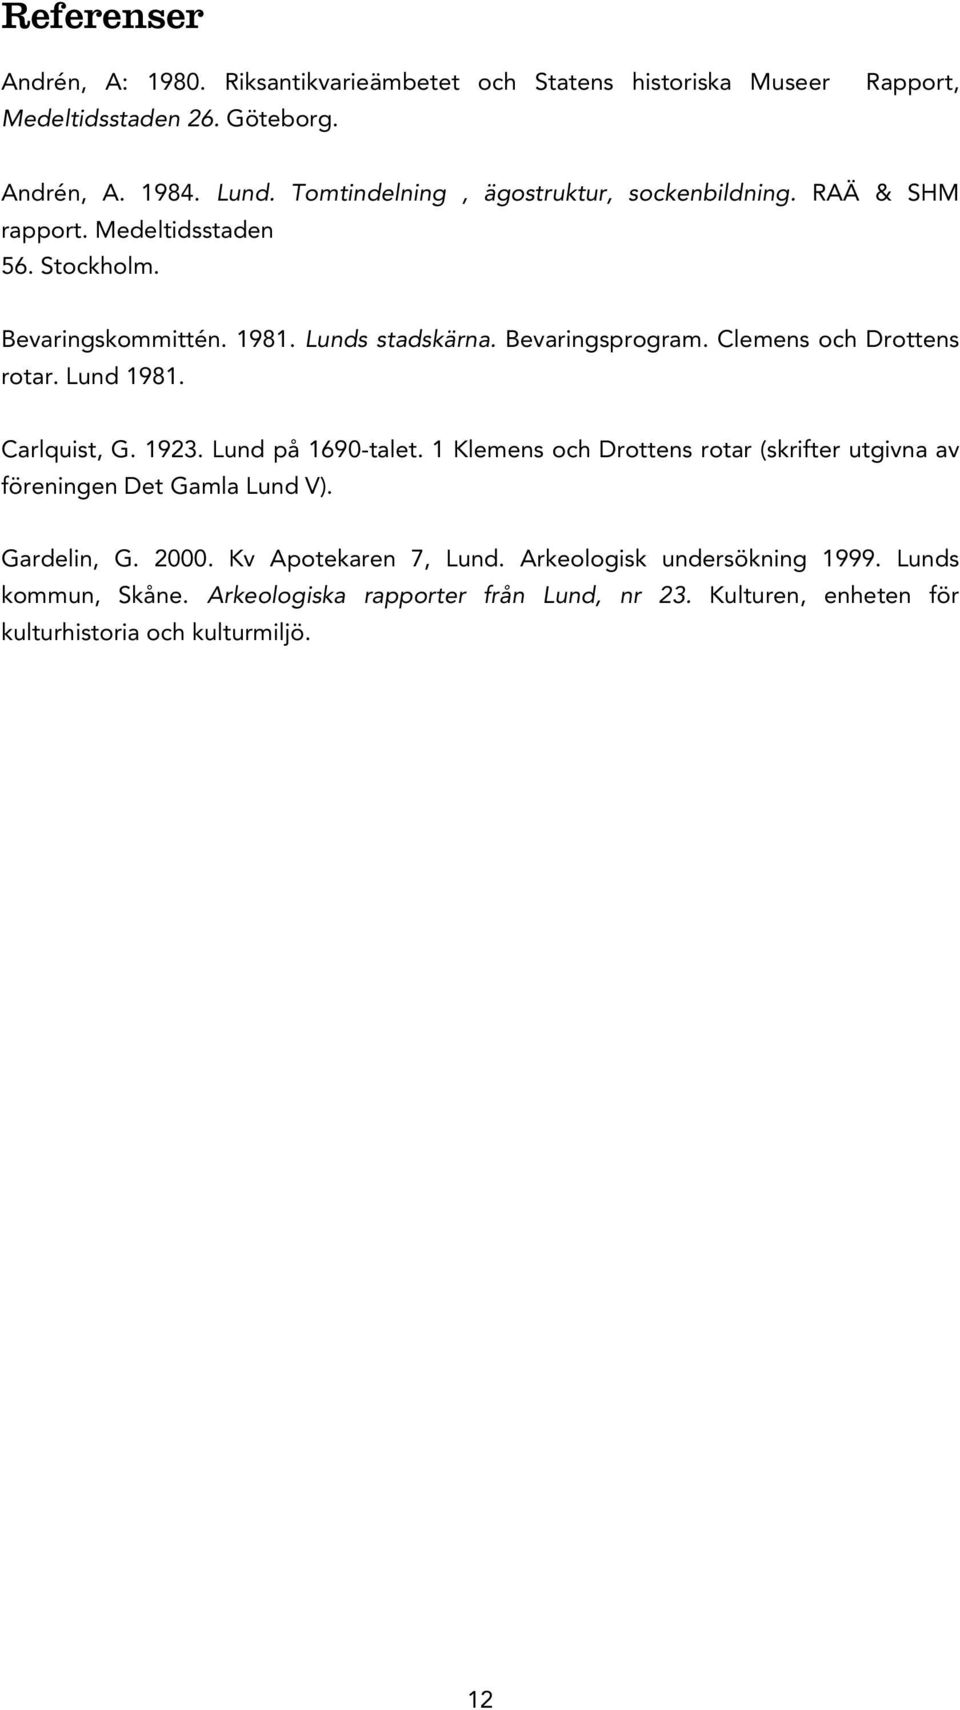 Clemens och Drottens rotar. Lund 1981. Carlquist, G. 1923. Lund på 1690-talet. 1 Klemens och Drottens rotar (skrifter utgivna av föreningen Det Gamla Lund V).